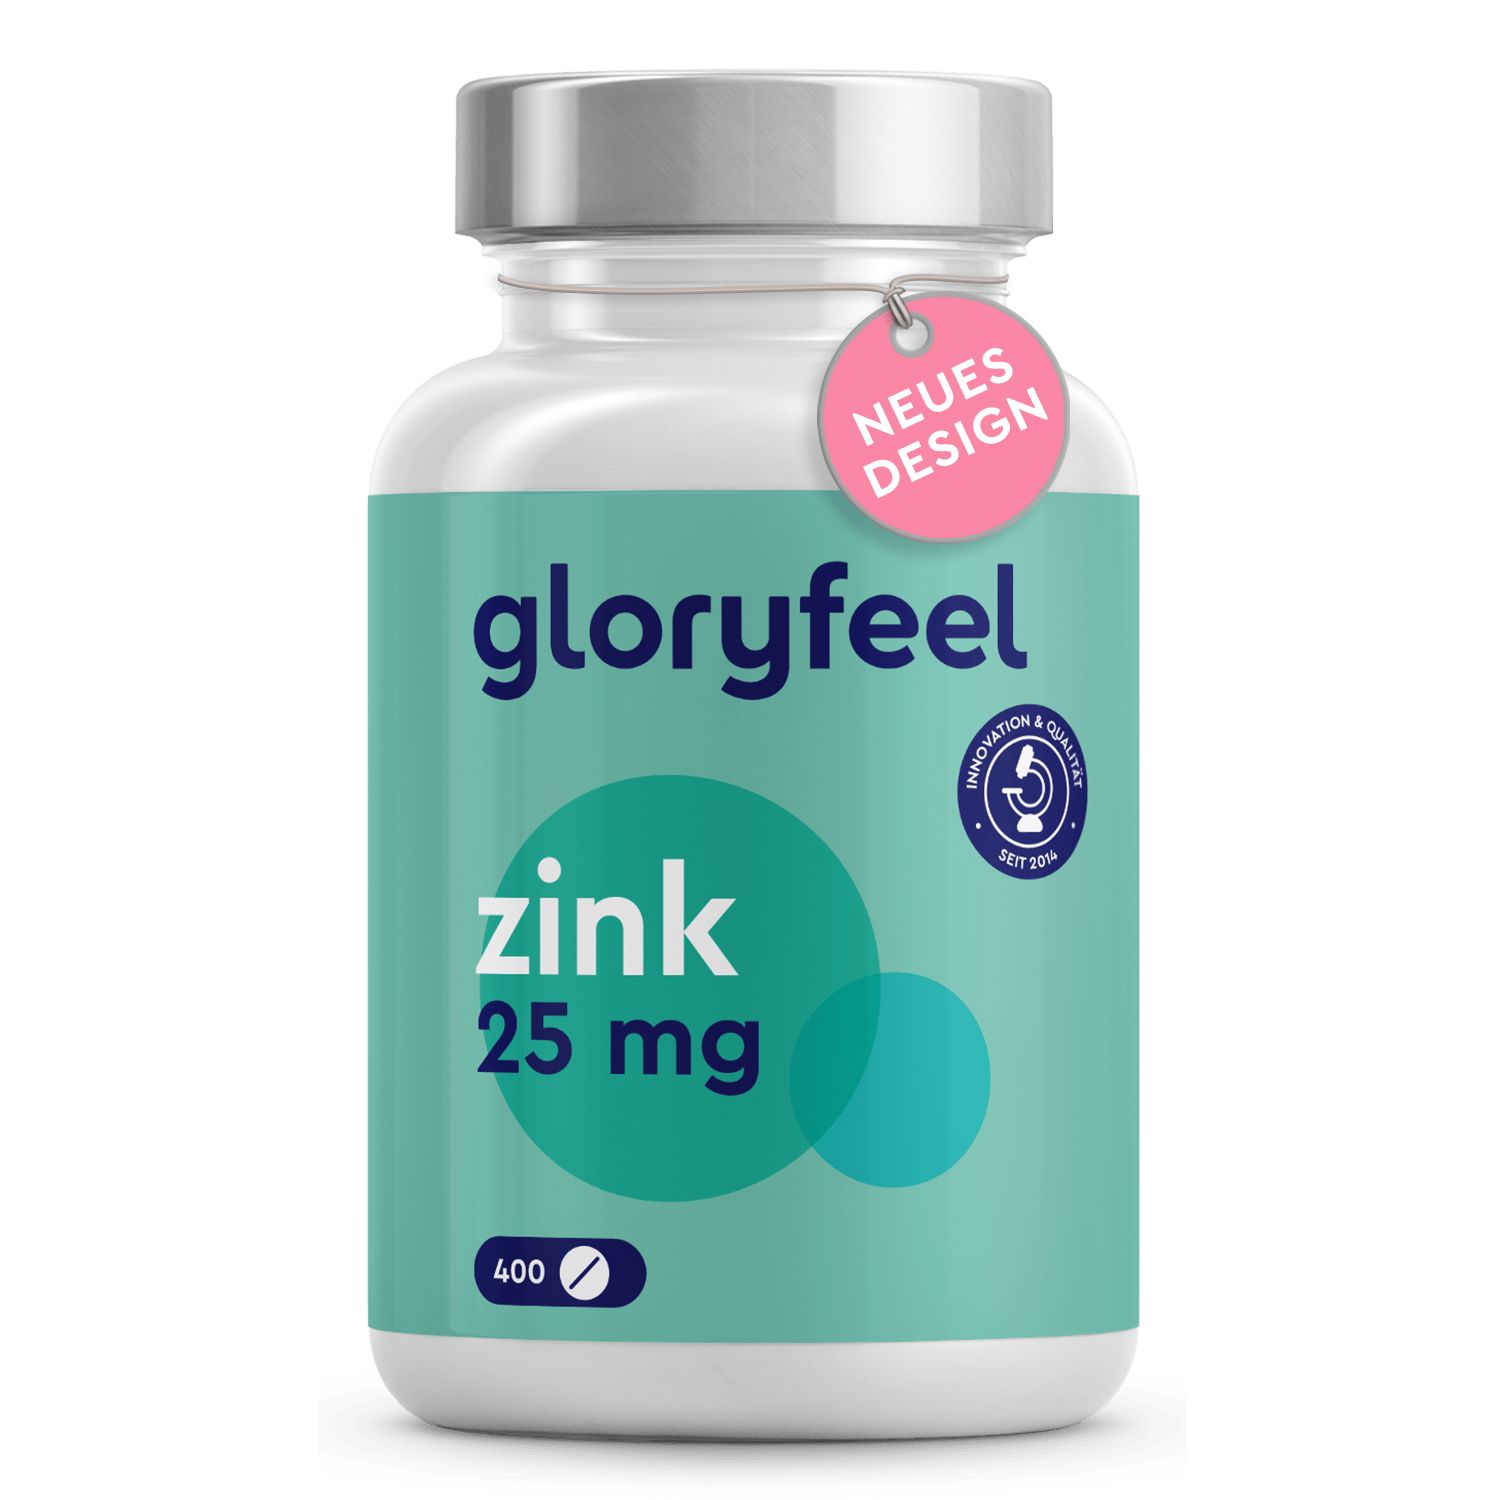 gloryfeel® Zink Tabletten - Mit Premium Zinkgluconat